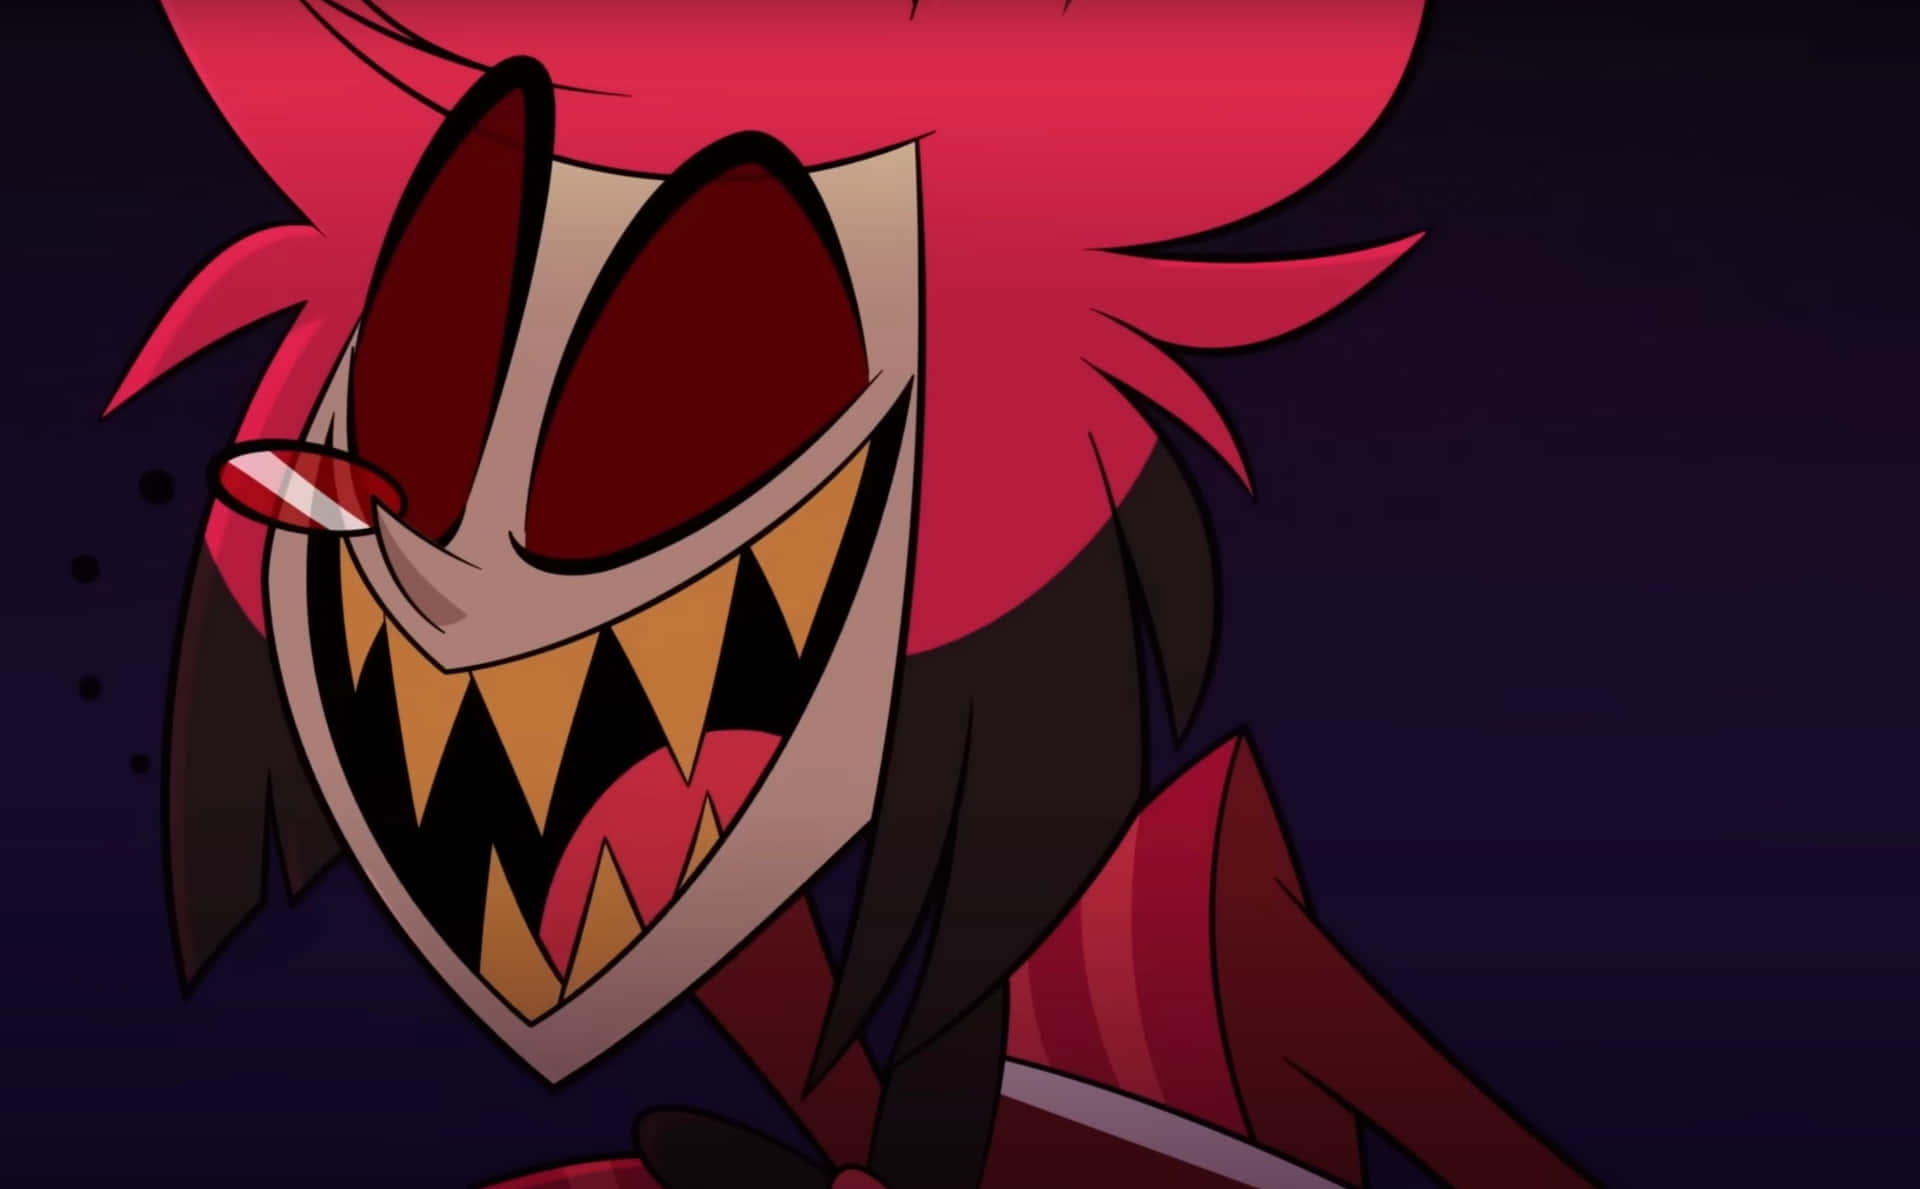 Alastor Smiling Demon Character Wallpaper